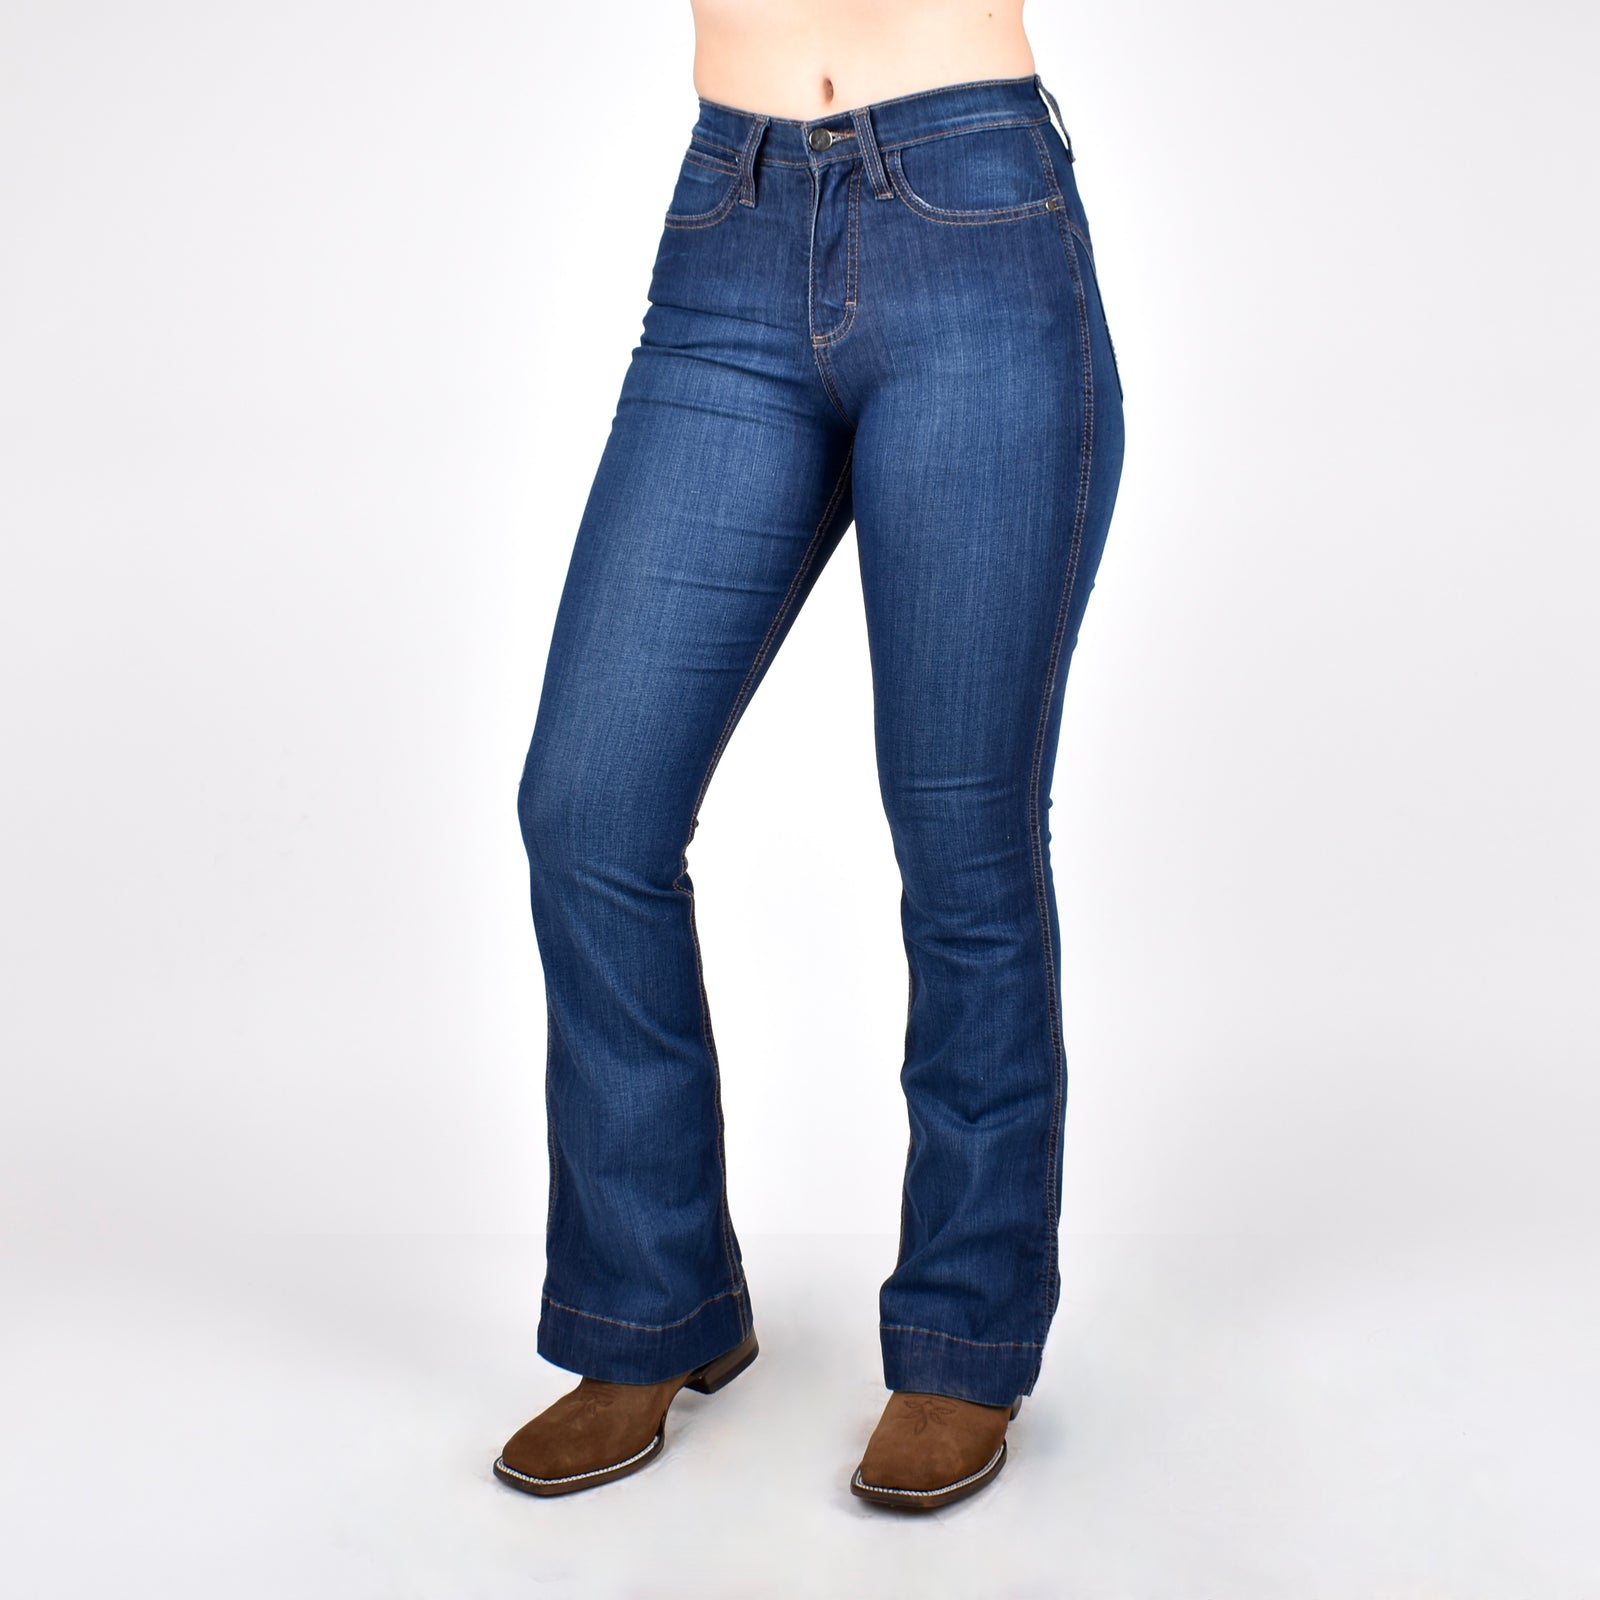 Jeans Wrangler Cintura Alta Dama – Botas Chicho